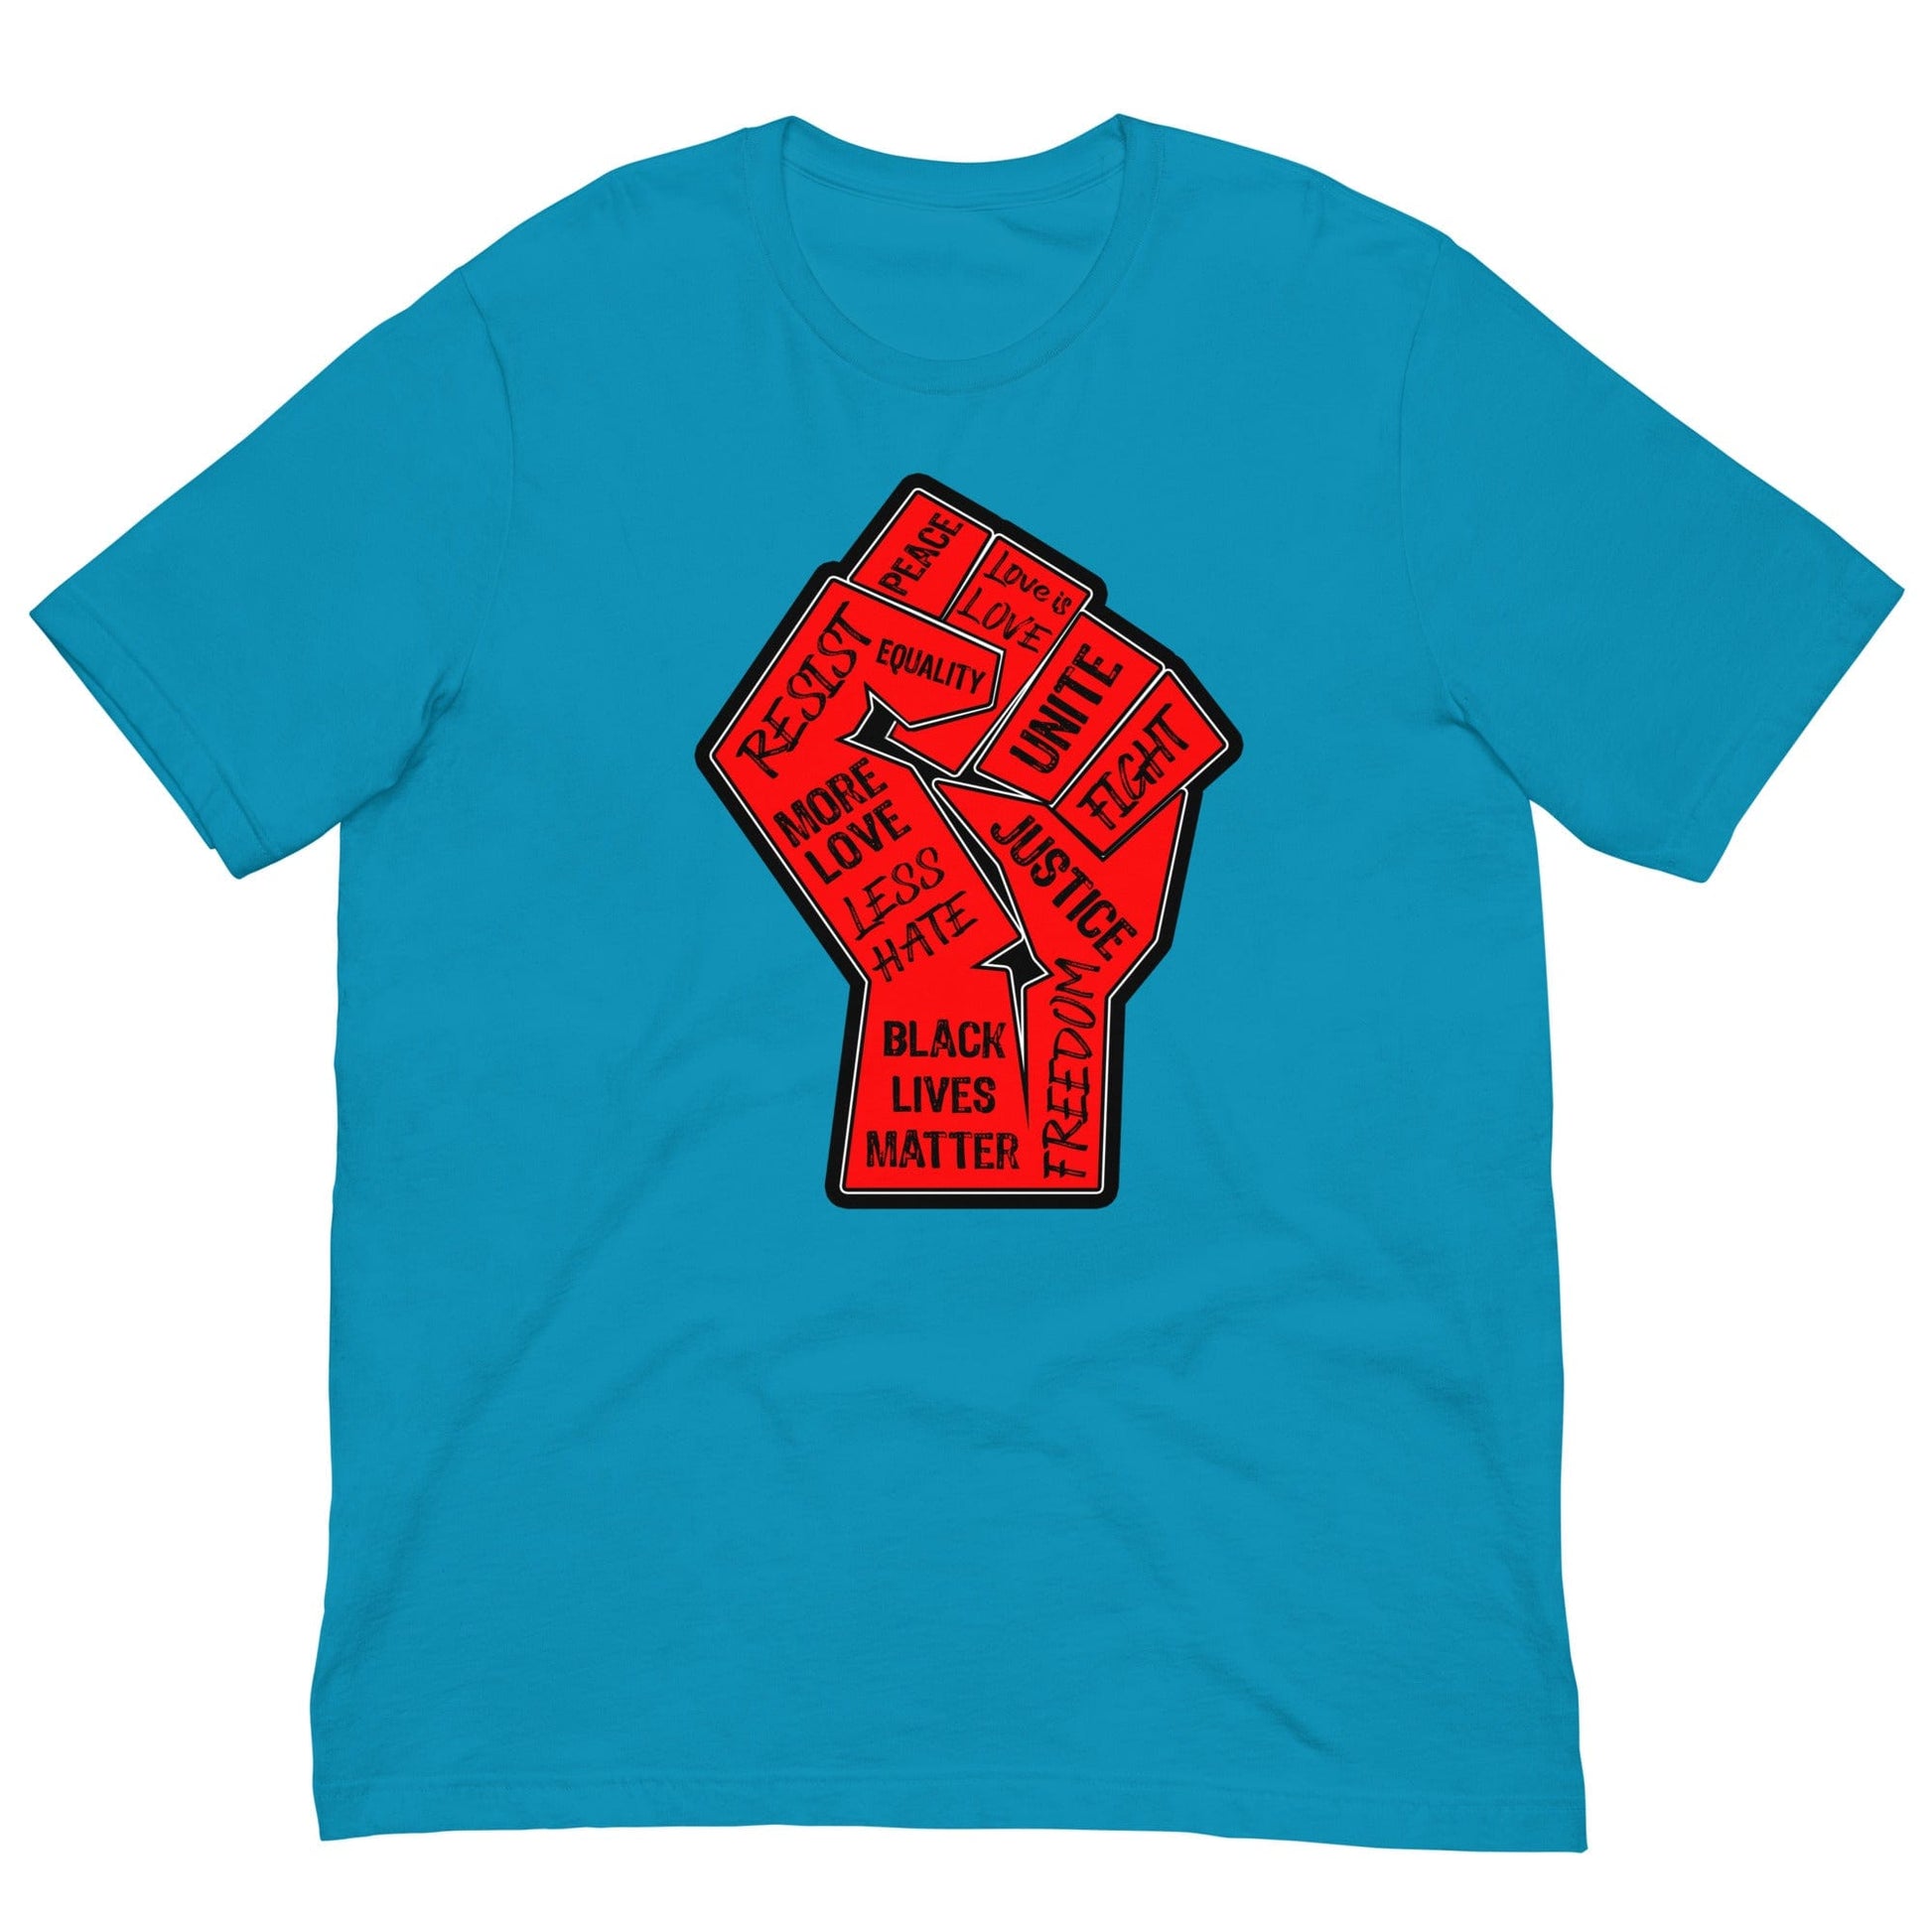 Civil Rights Fist T-shirt Aqua / S